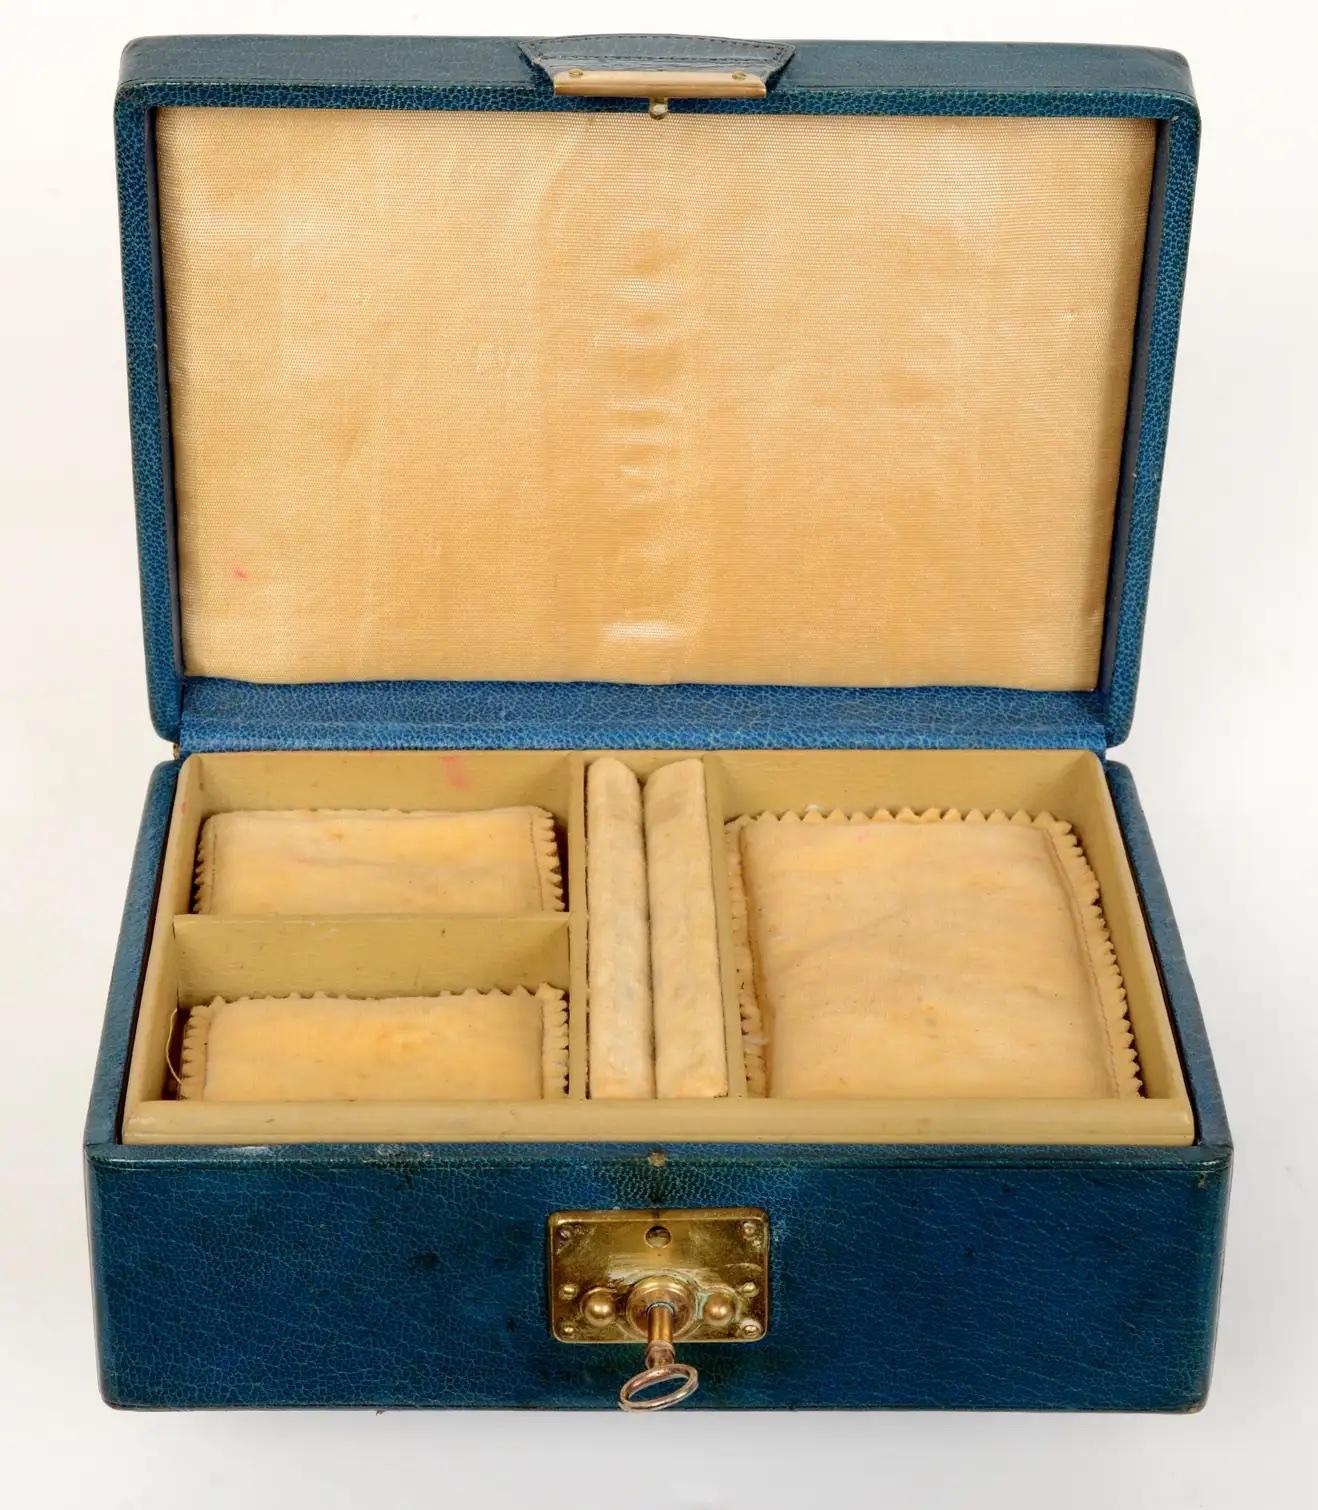 Abercrombie & Fitch New York, Vintage, patiniert feine glatte blaue Kalbsleder abgedeckt Verriegelung Schmuckkasten, c1950. Der Deckel hat den Originalgriff. Die Box ist mit Wildleder ausgekleidet und hat ein herausnehmbares Tablett. Das Tablett hat